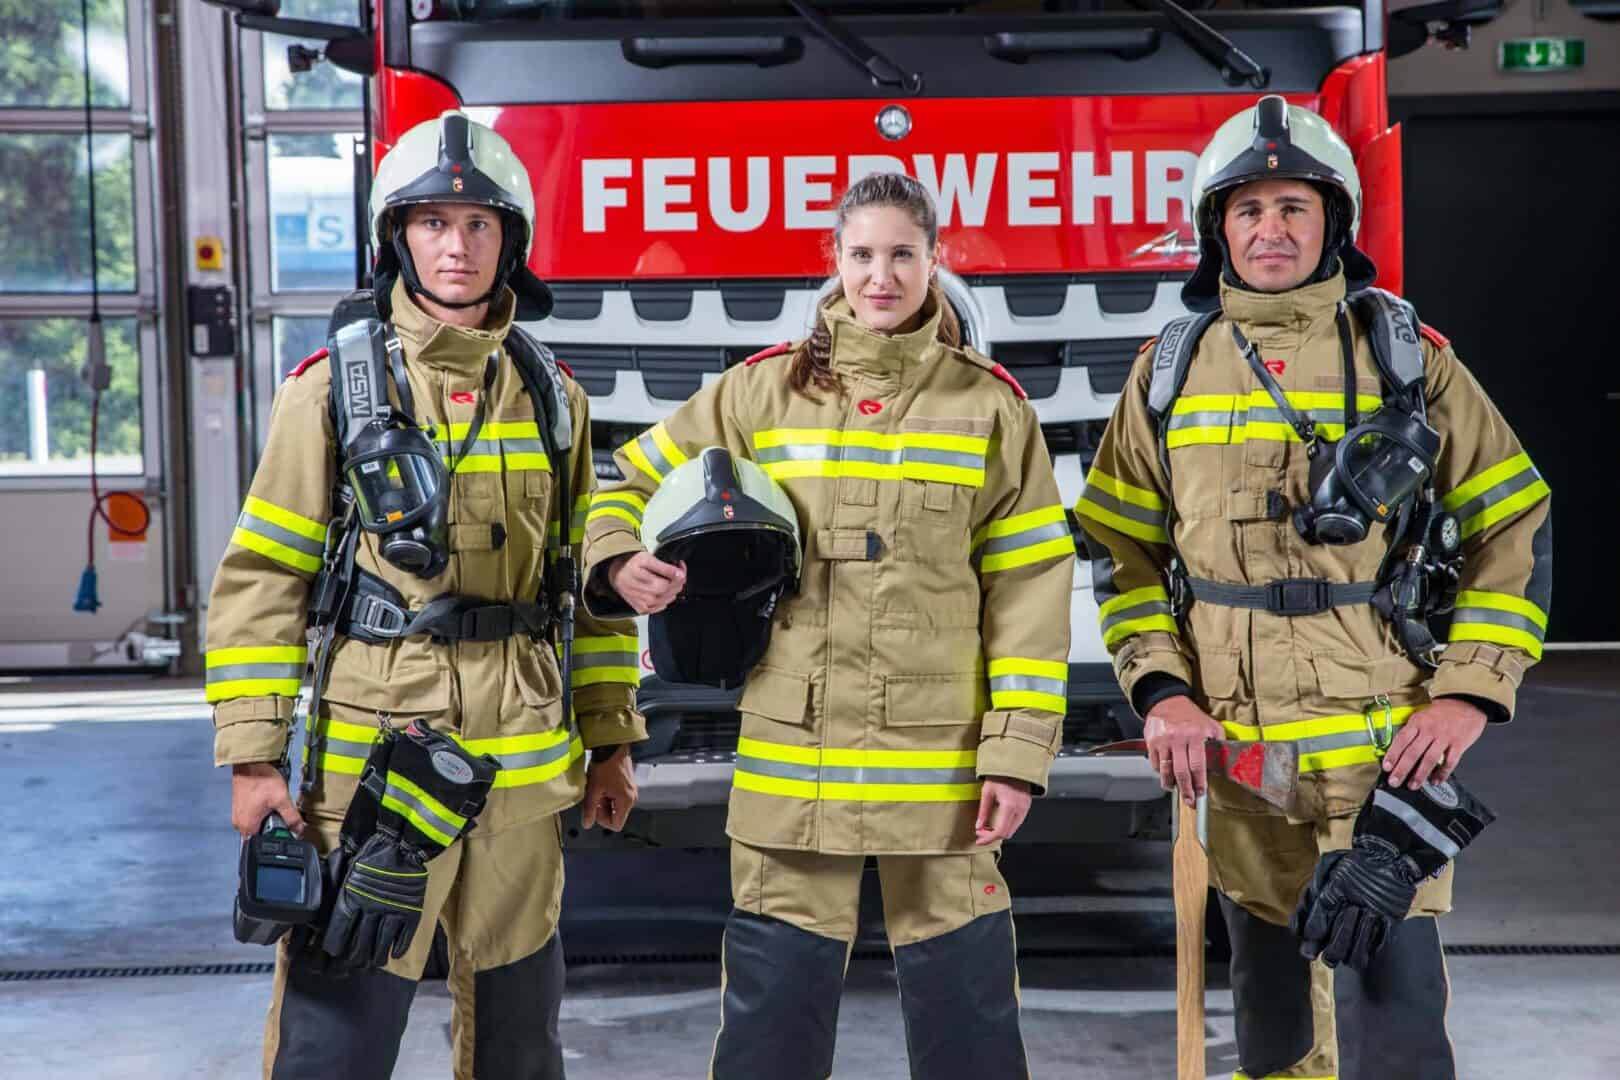 3. FF-Award 2020 – Fotobewerb – Feuerwehr schafft Gemeinschaft!